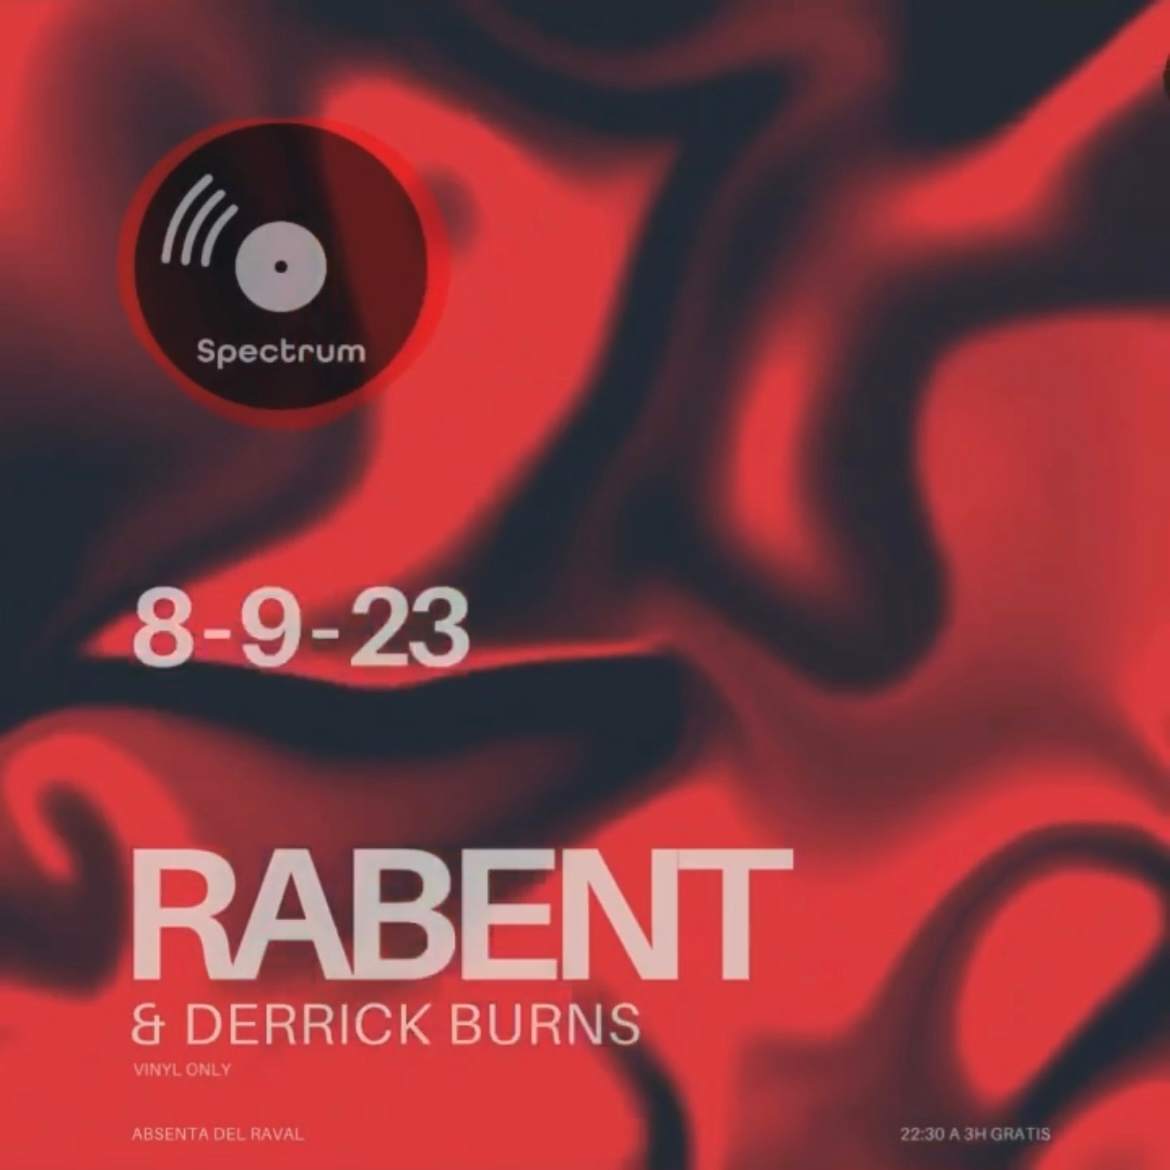 Spectrum with Rabent & Derrick Burns - フライヤー表